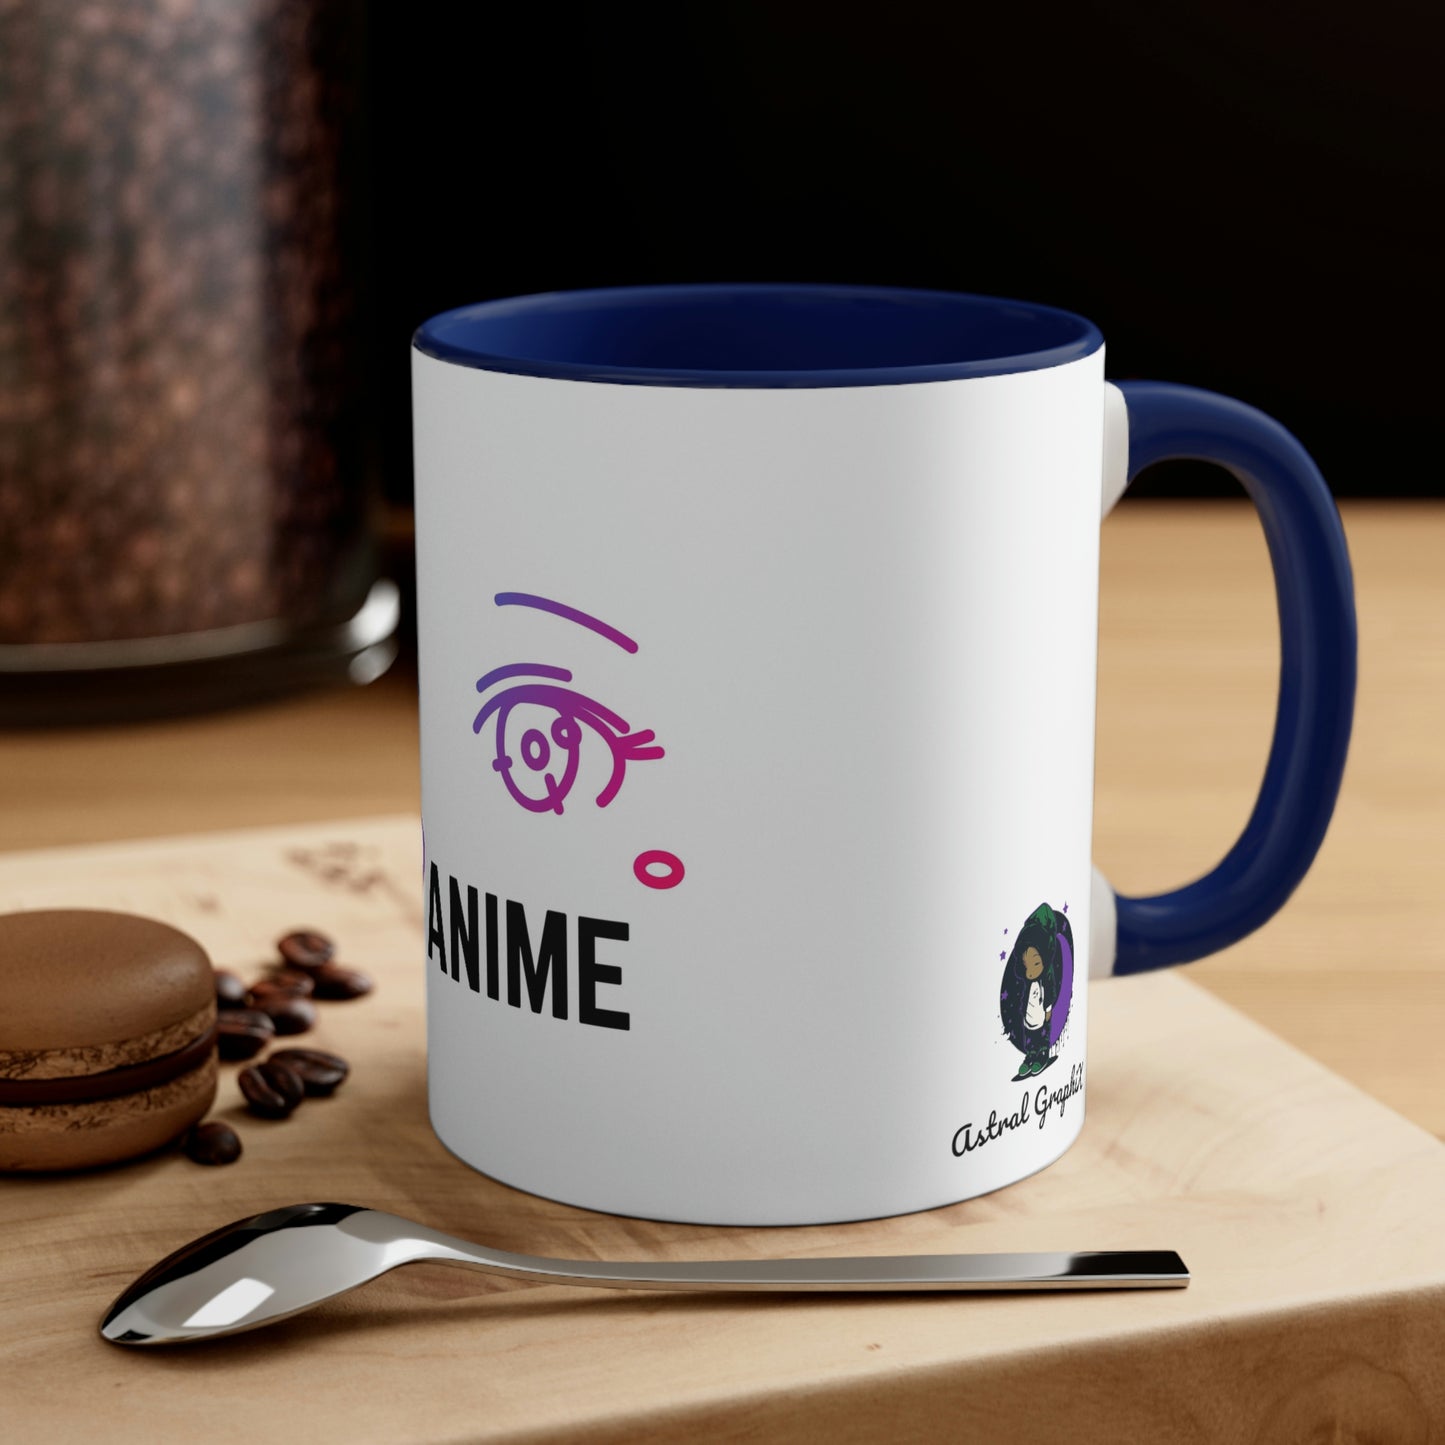 Anime Collection - Accent Coffee Mug, 11oz - I Heart Anime